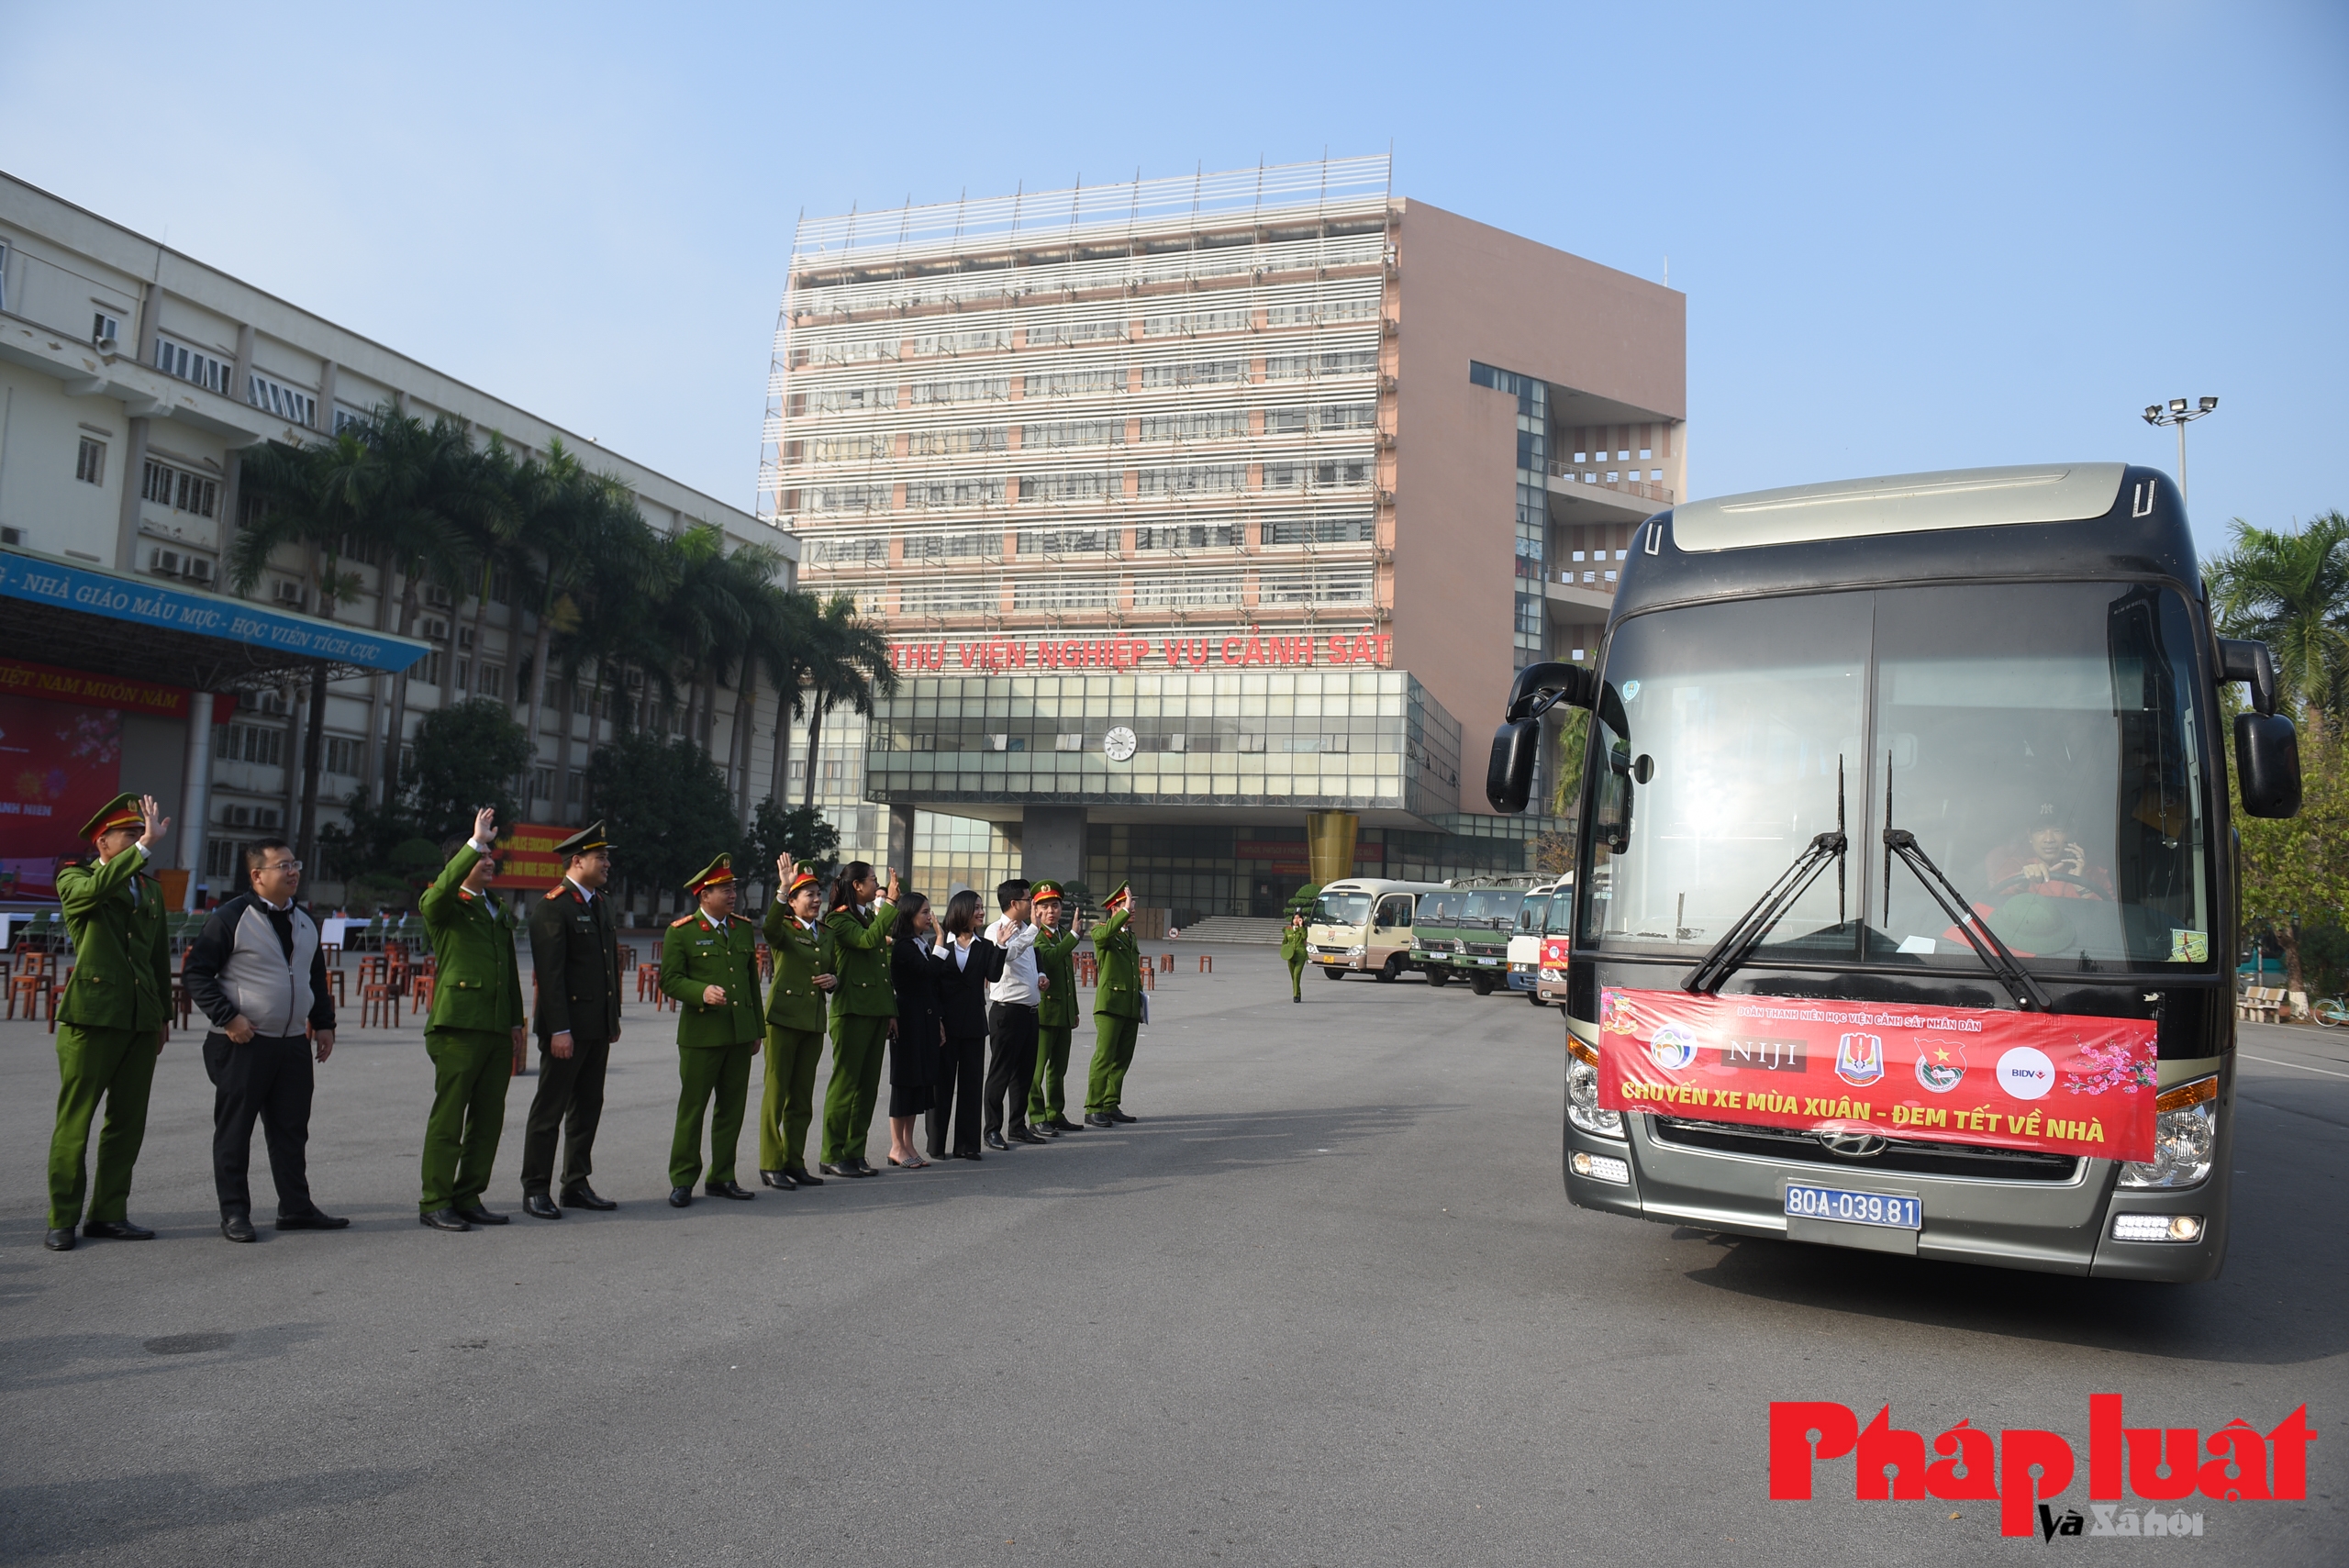 Chuyến xe mùa xuân đưa hàng trăm học viên học viện CSND về quê đón Tết